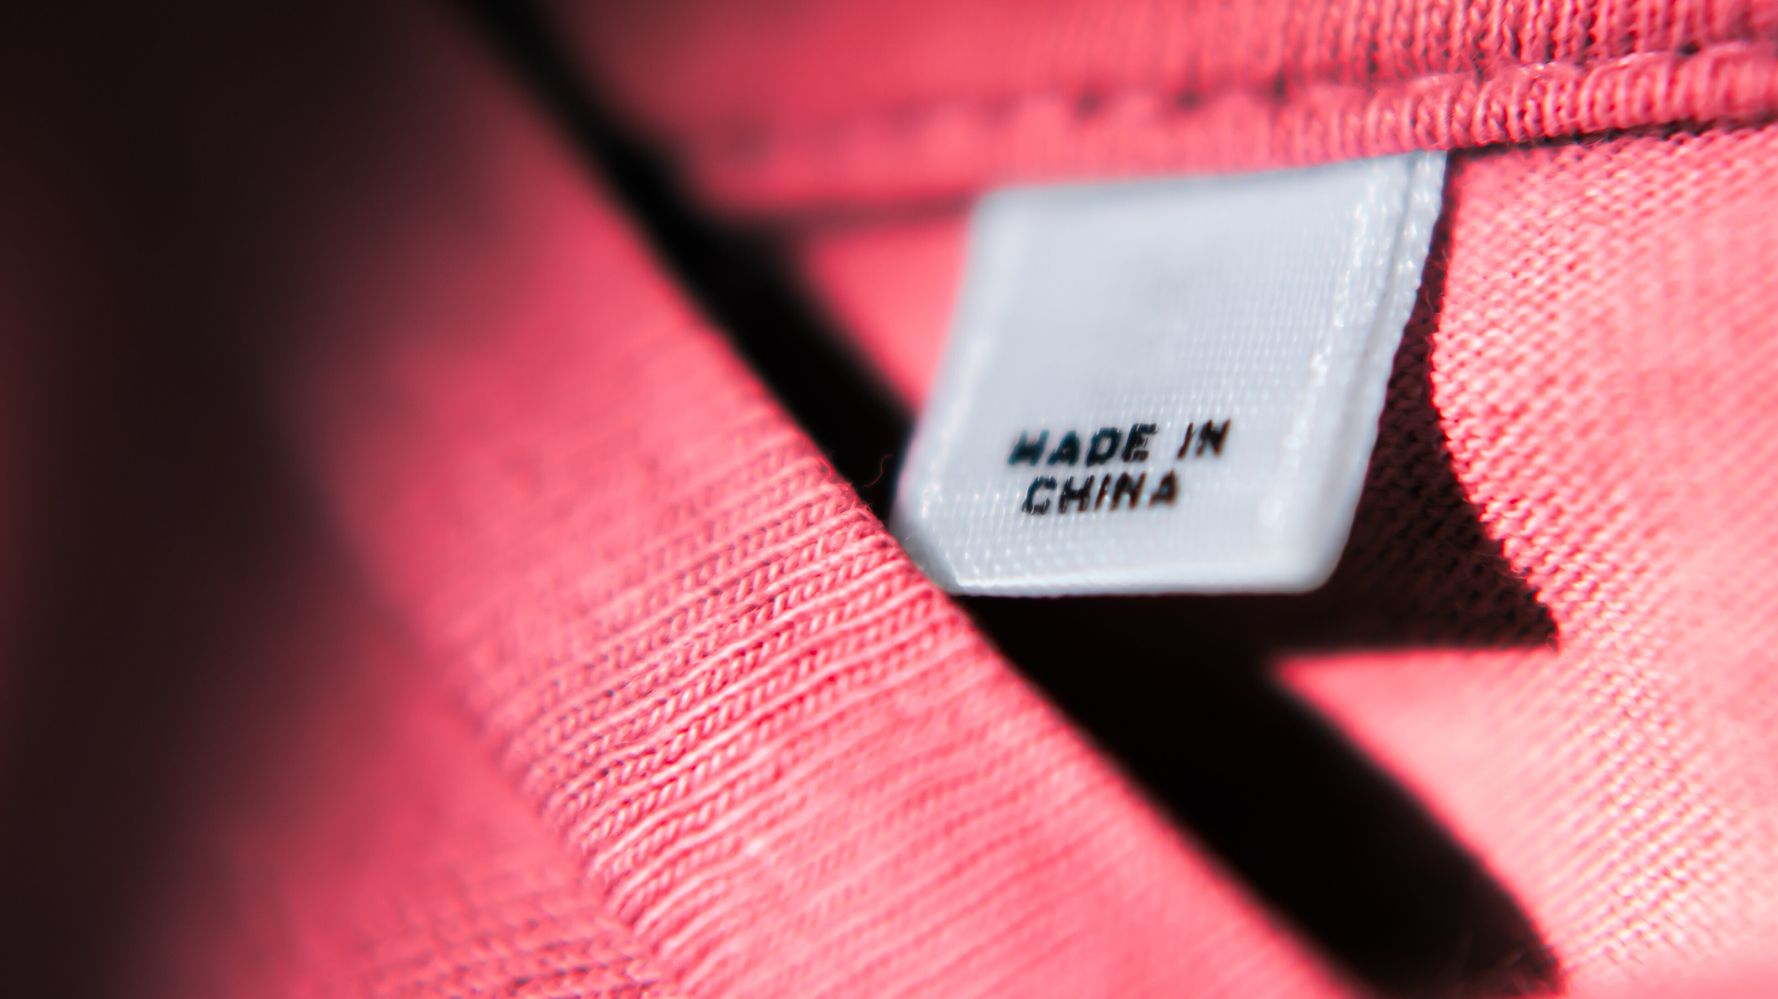 خرید لباس از چین